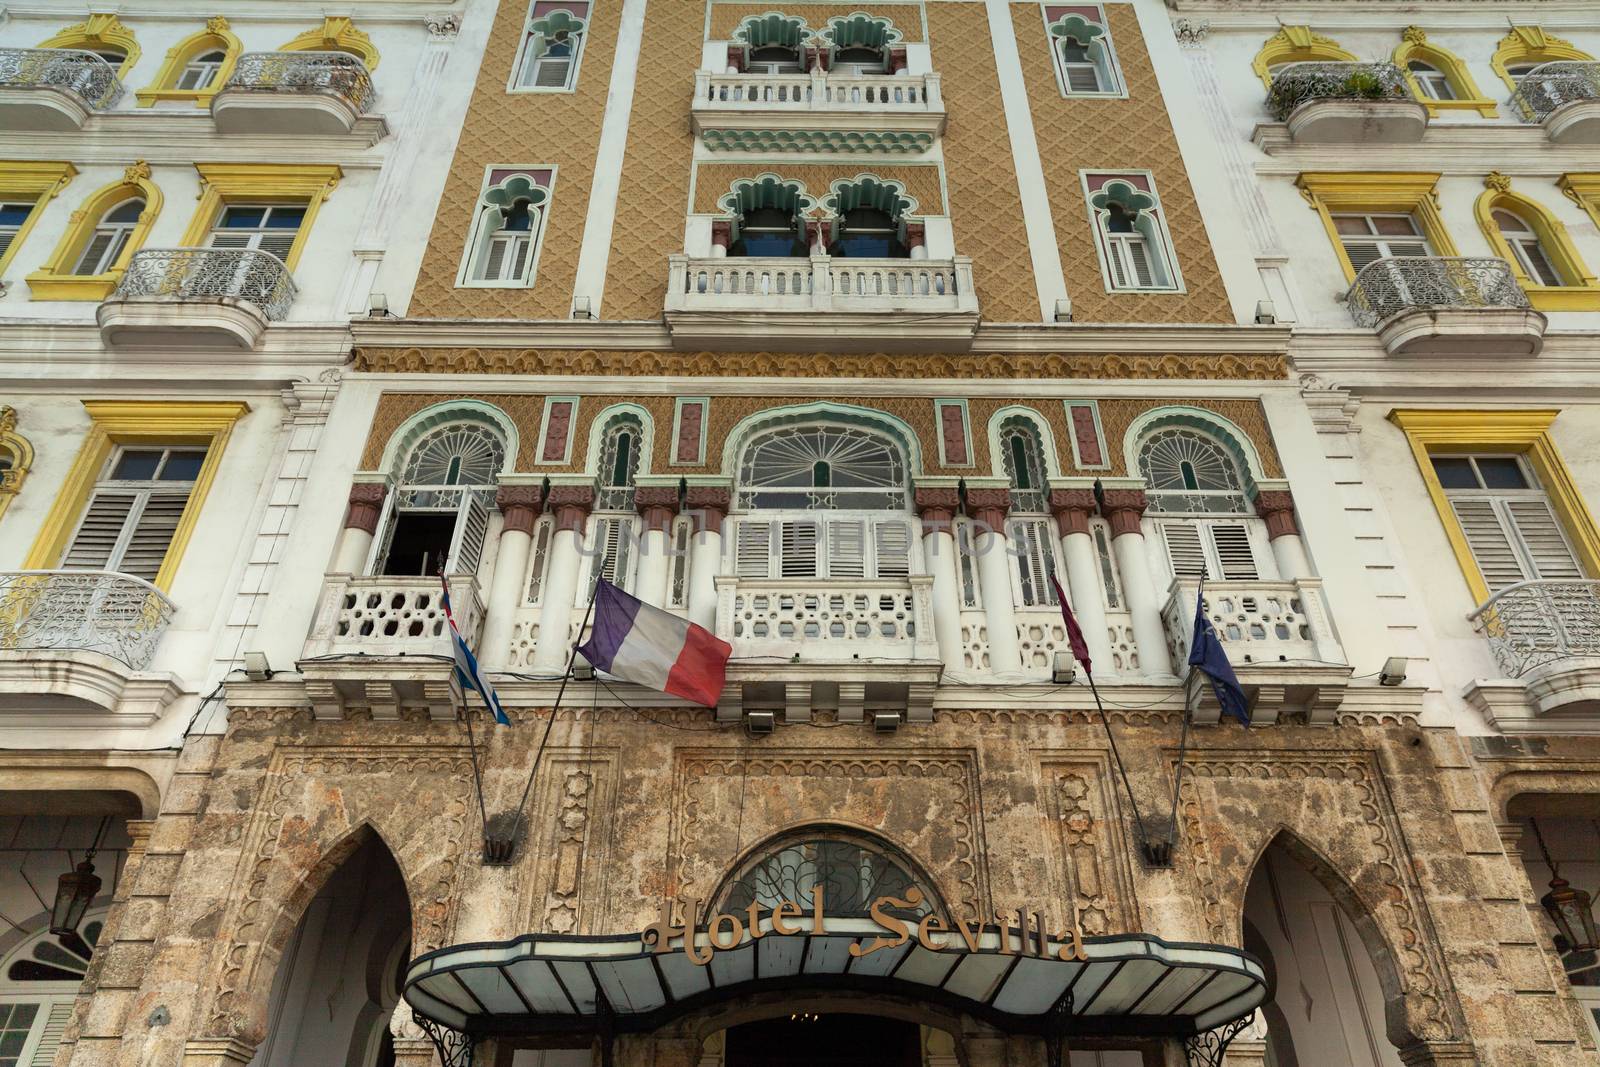 Hotel Sevilla, Cuba, Havana by vlad-m